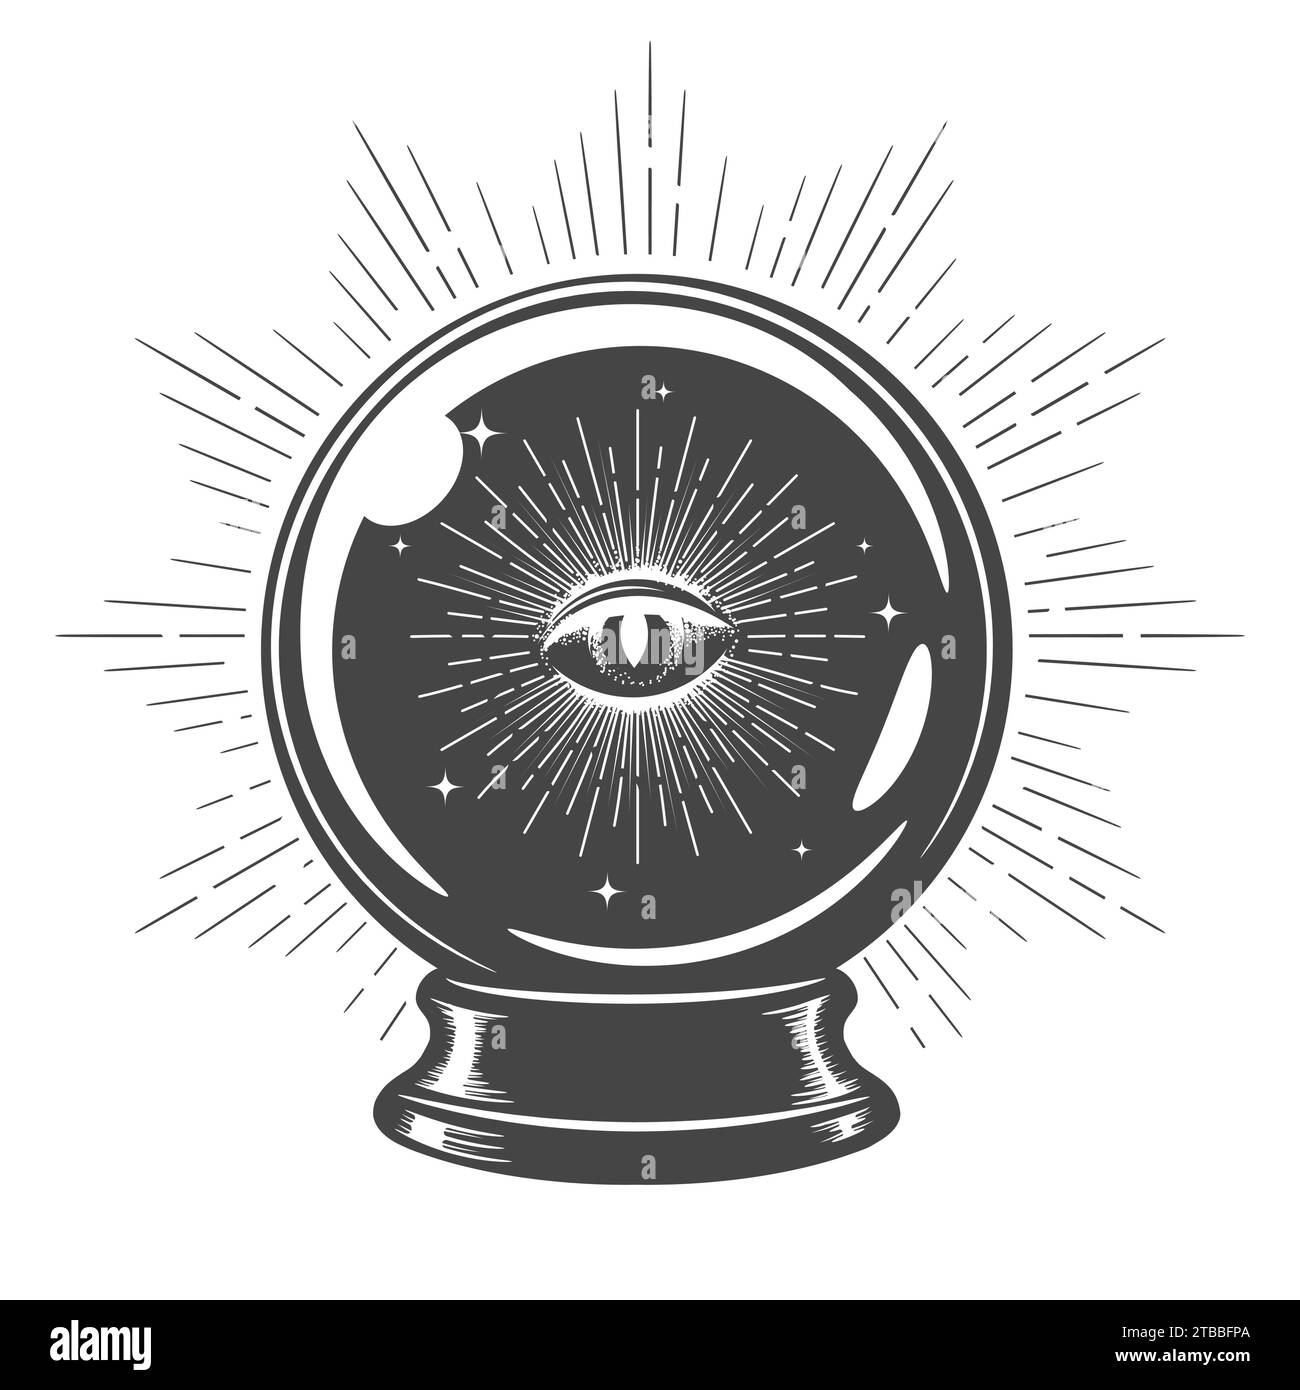 Sfera di cristallo magica disegnata a mano con Eye of Providence all'interno. Isolato su illustrazione vettoriale bianca. Non è stata utilizzata alcuna IA. Illustrazione Vettoriale